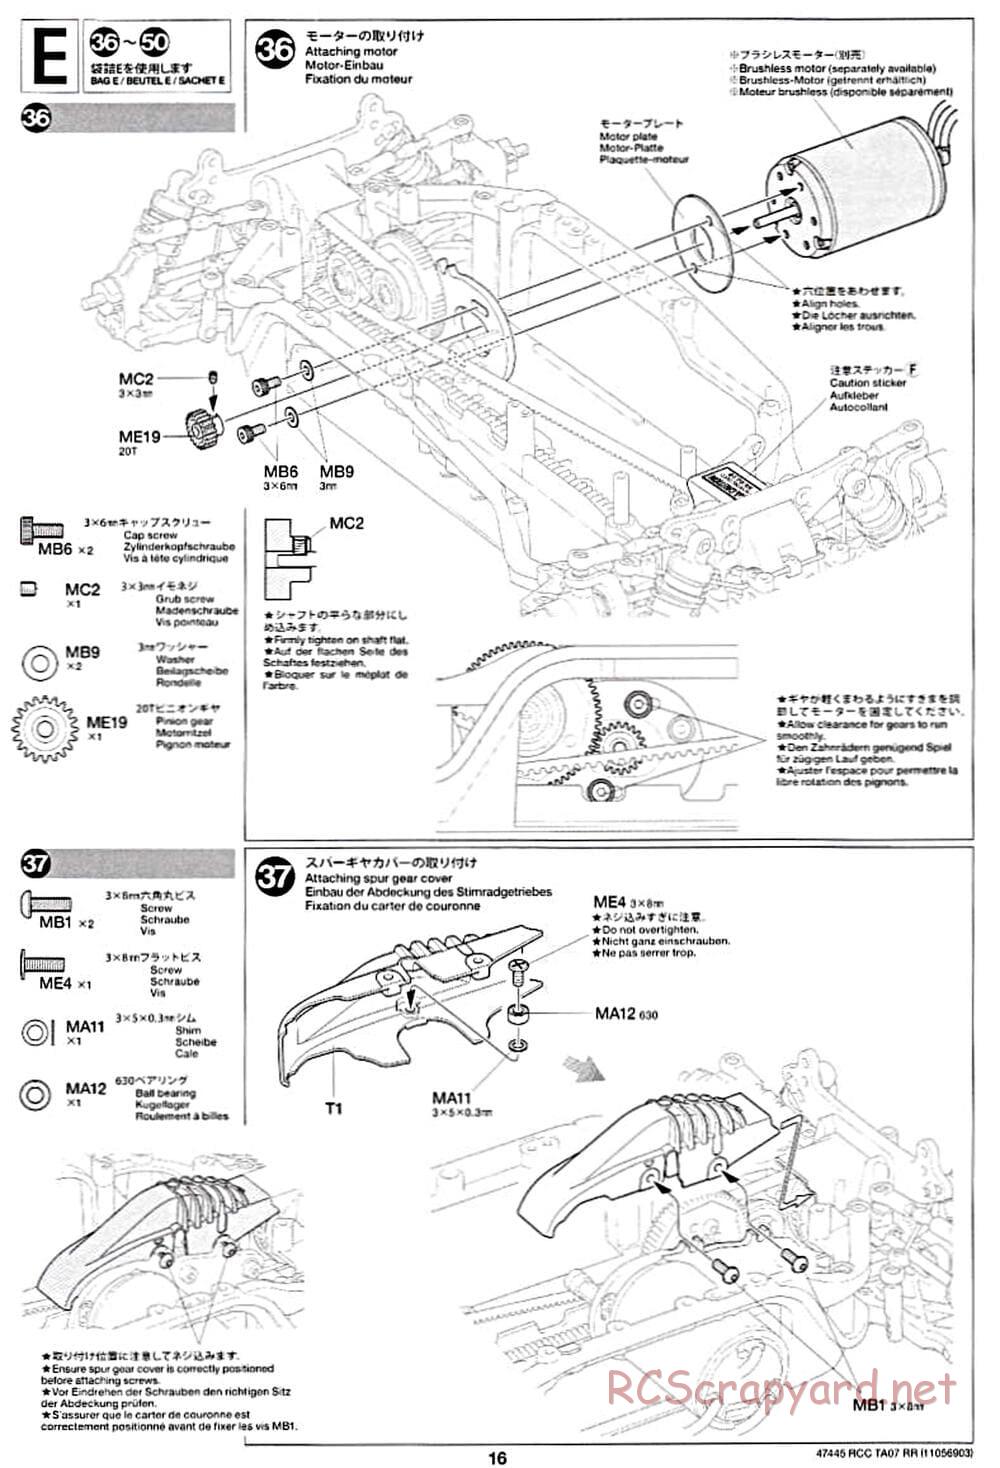 Tamiya - TA07 RR Chassis - Manual - Page 16